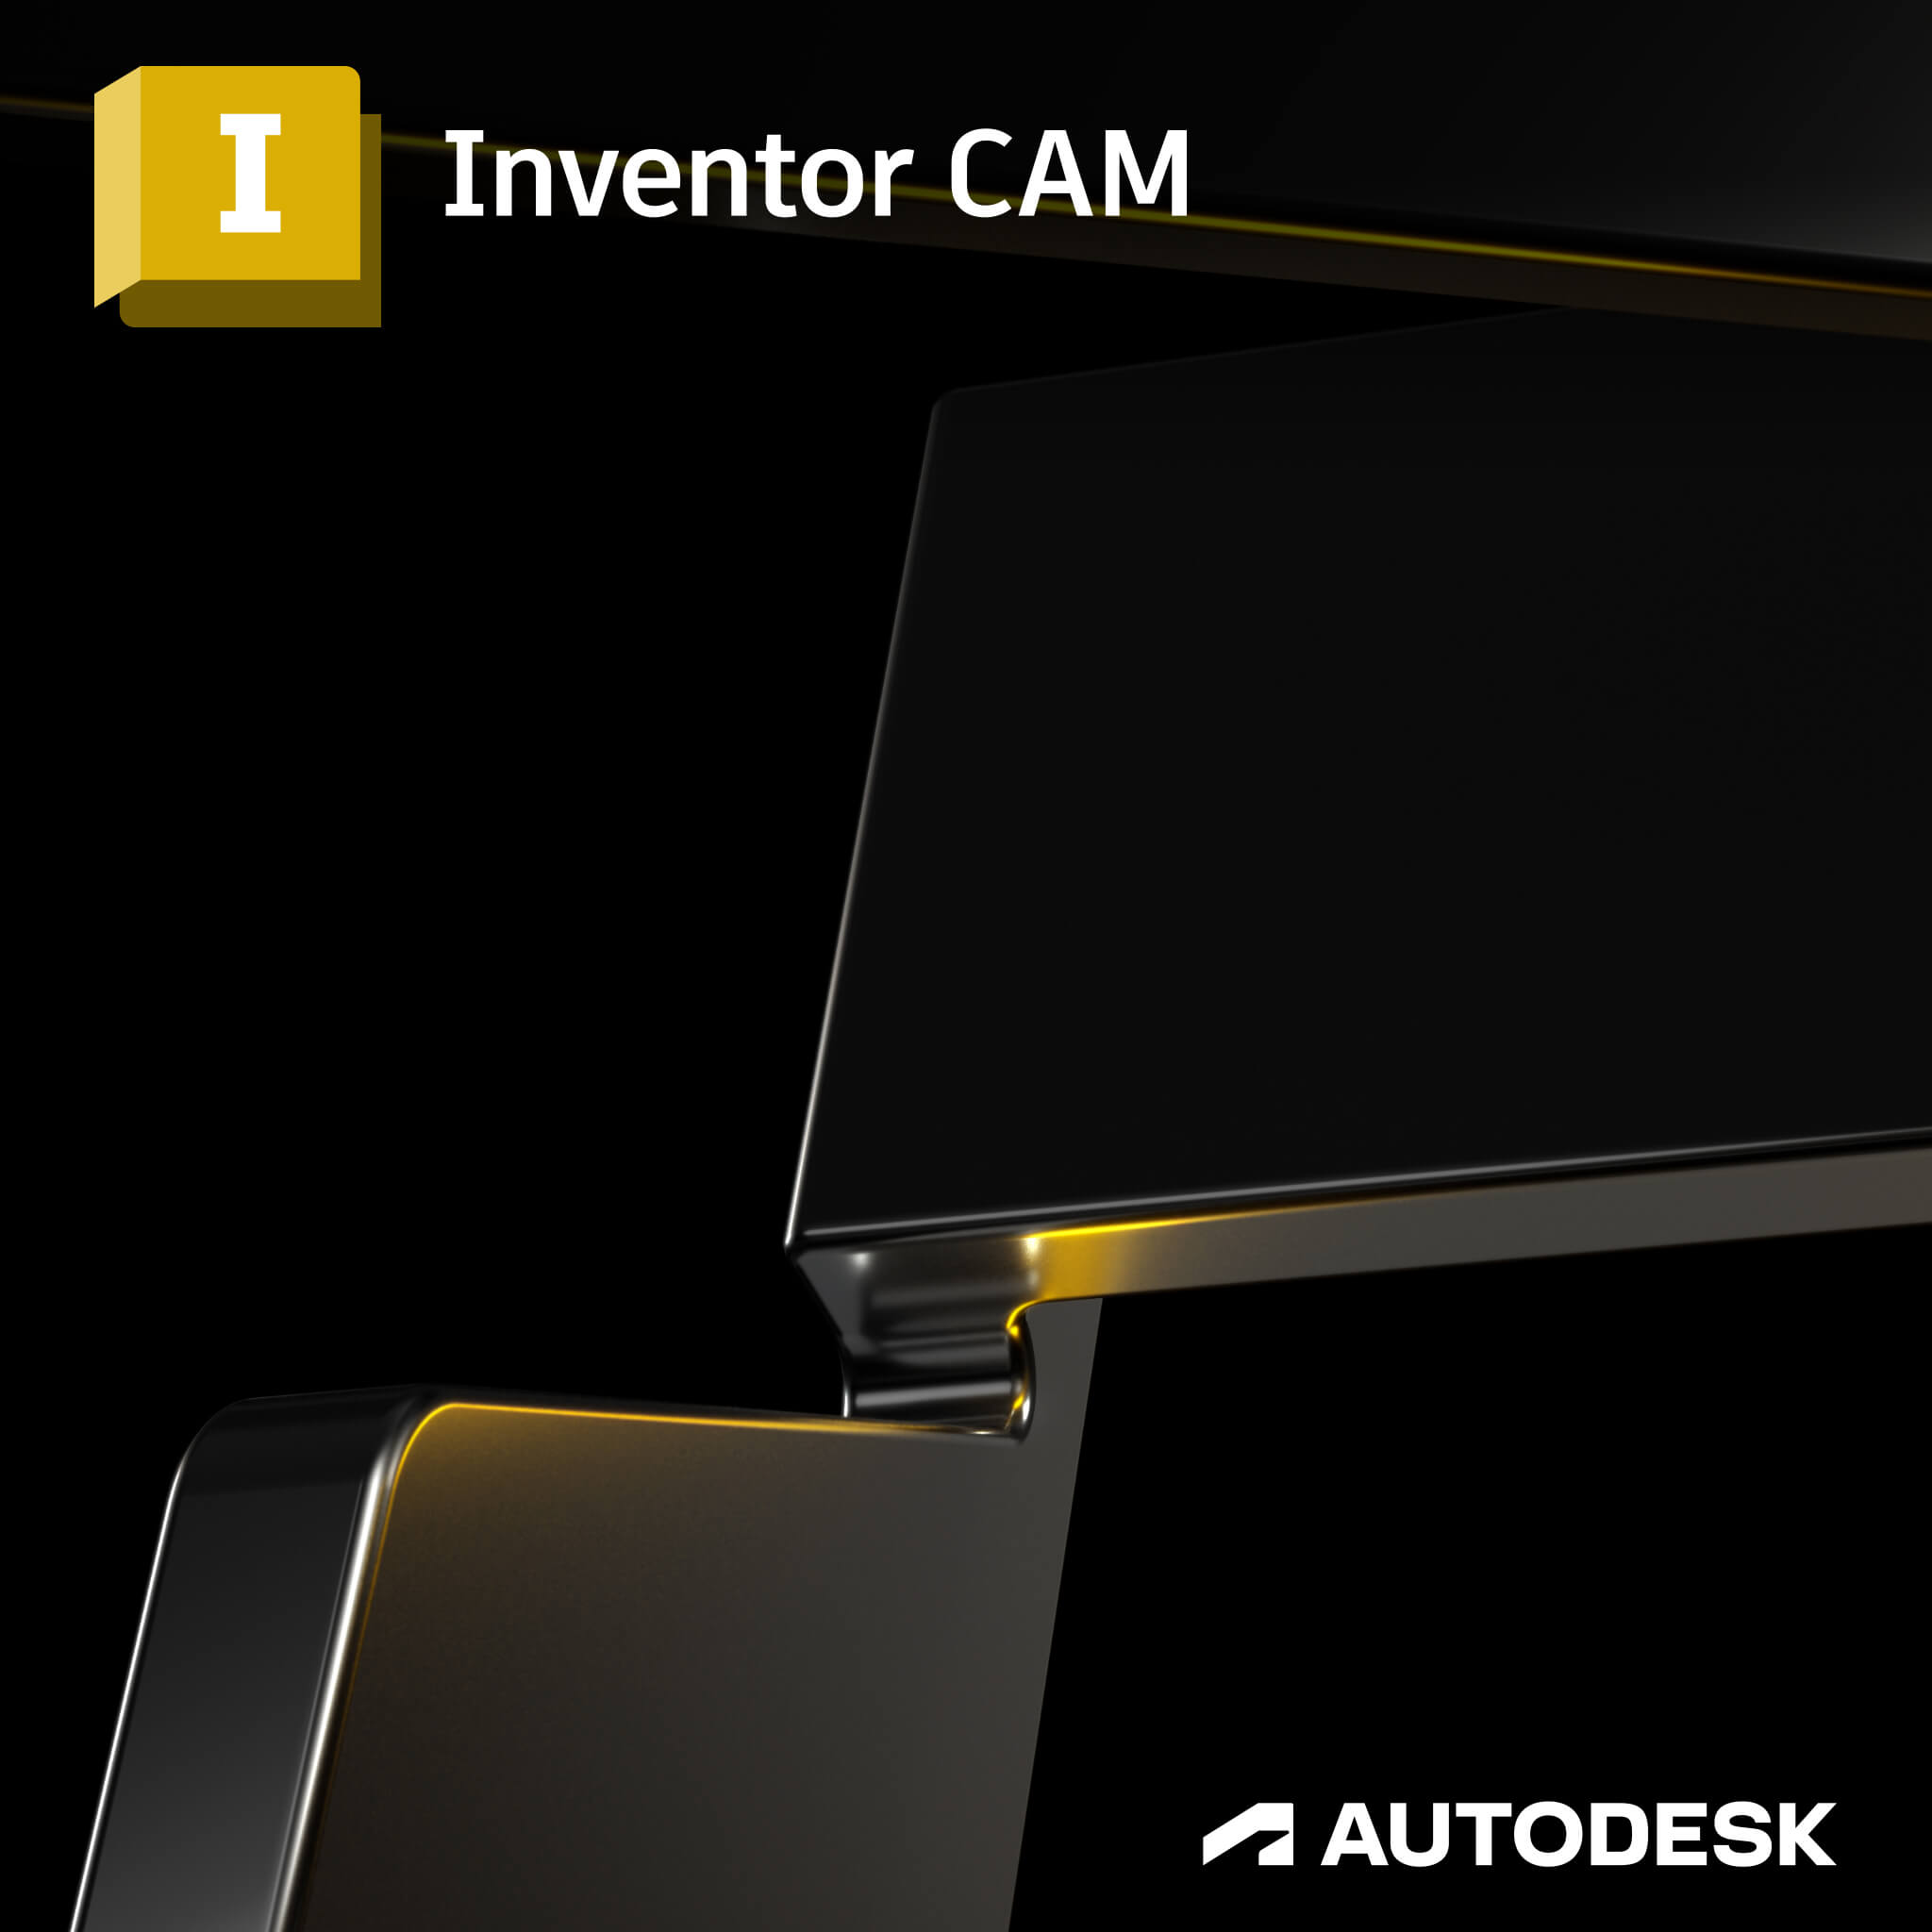 Inventor CAM